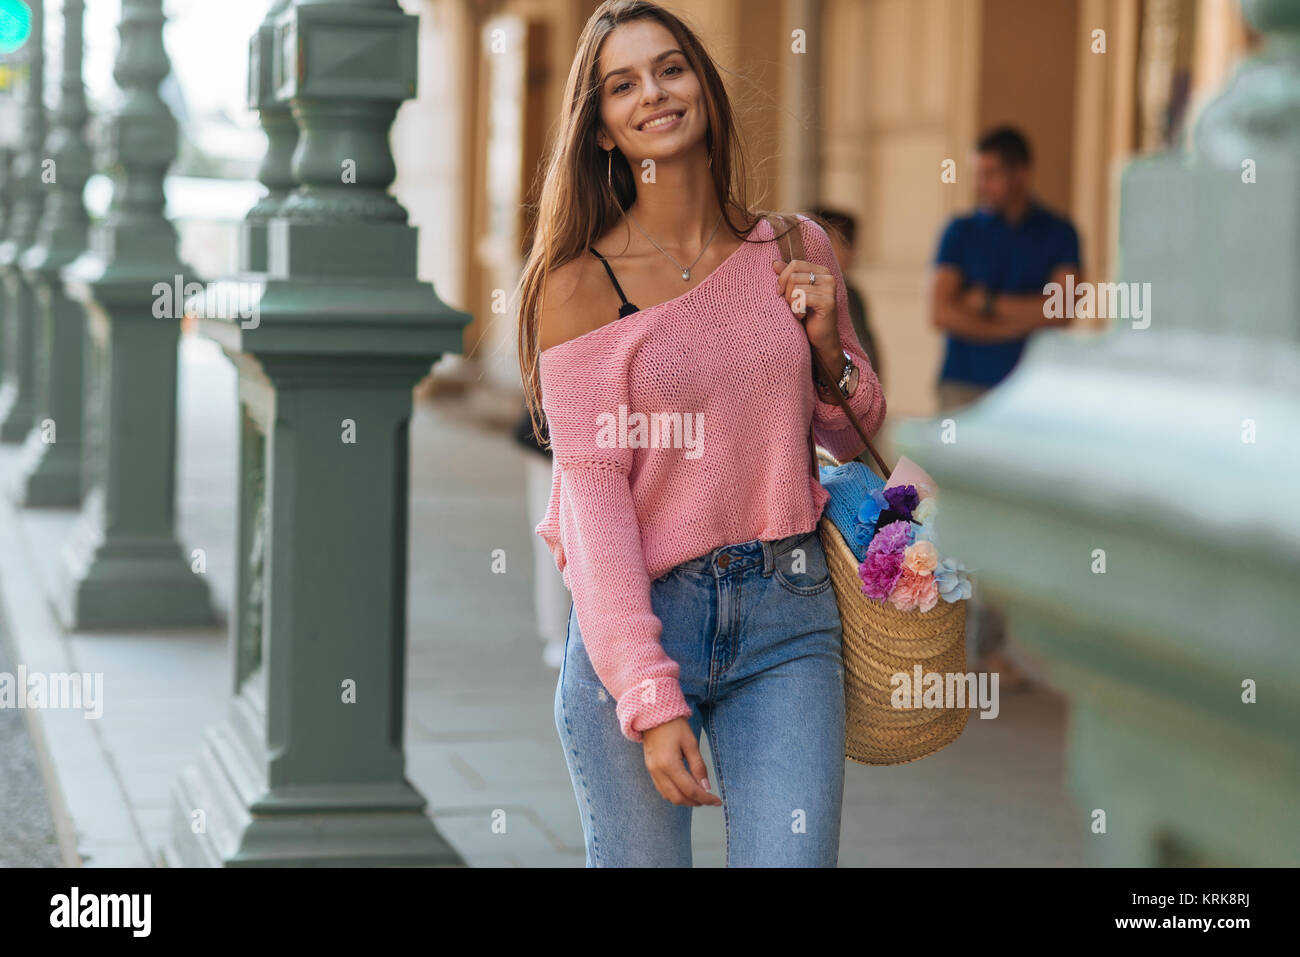 Lächelnd kaukasische Frau Blumen auf Bürgersteig Stockfoto